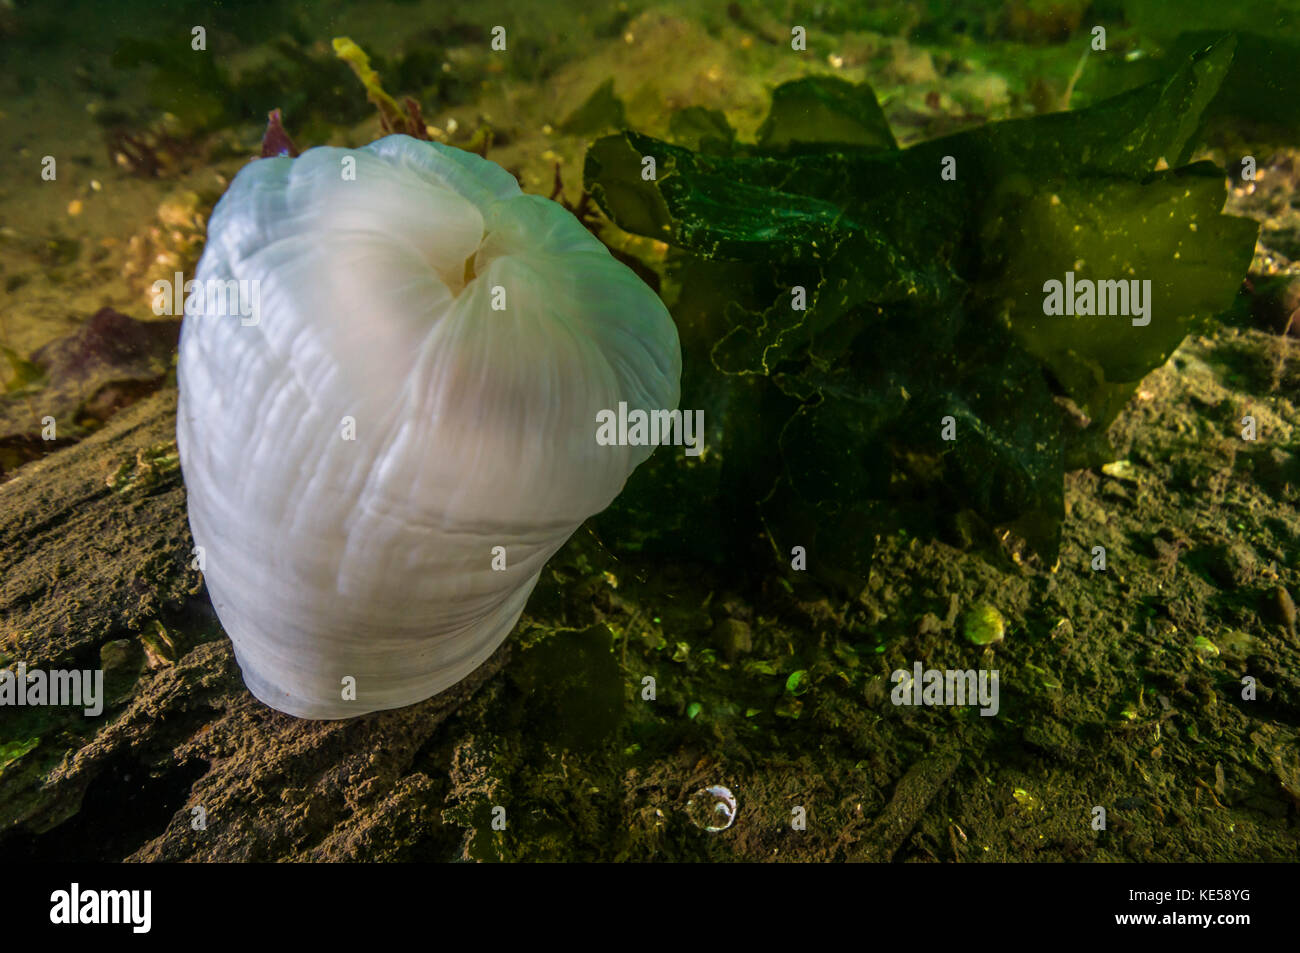 Giant plumose anemone Puget Sound, Washington. Stock Photo